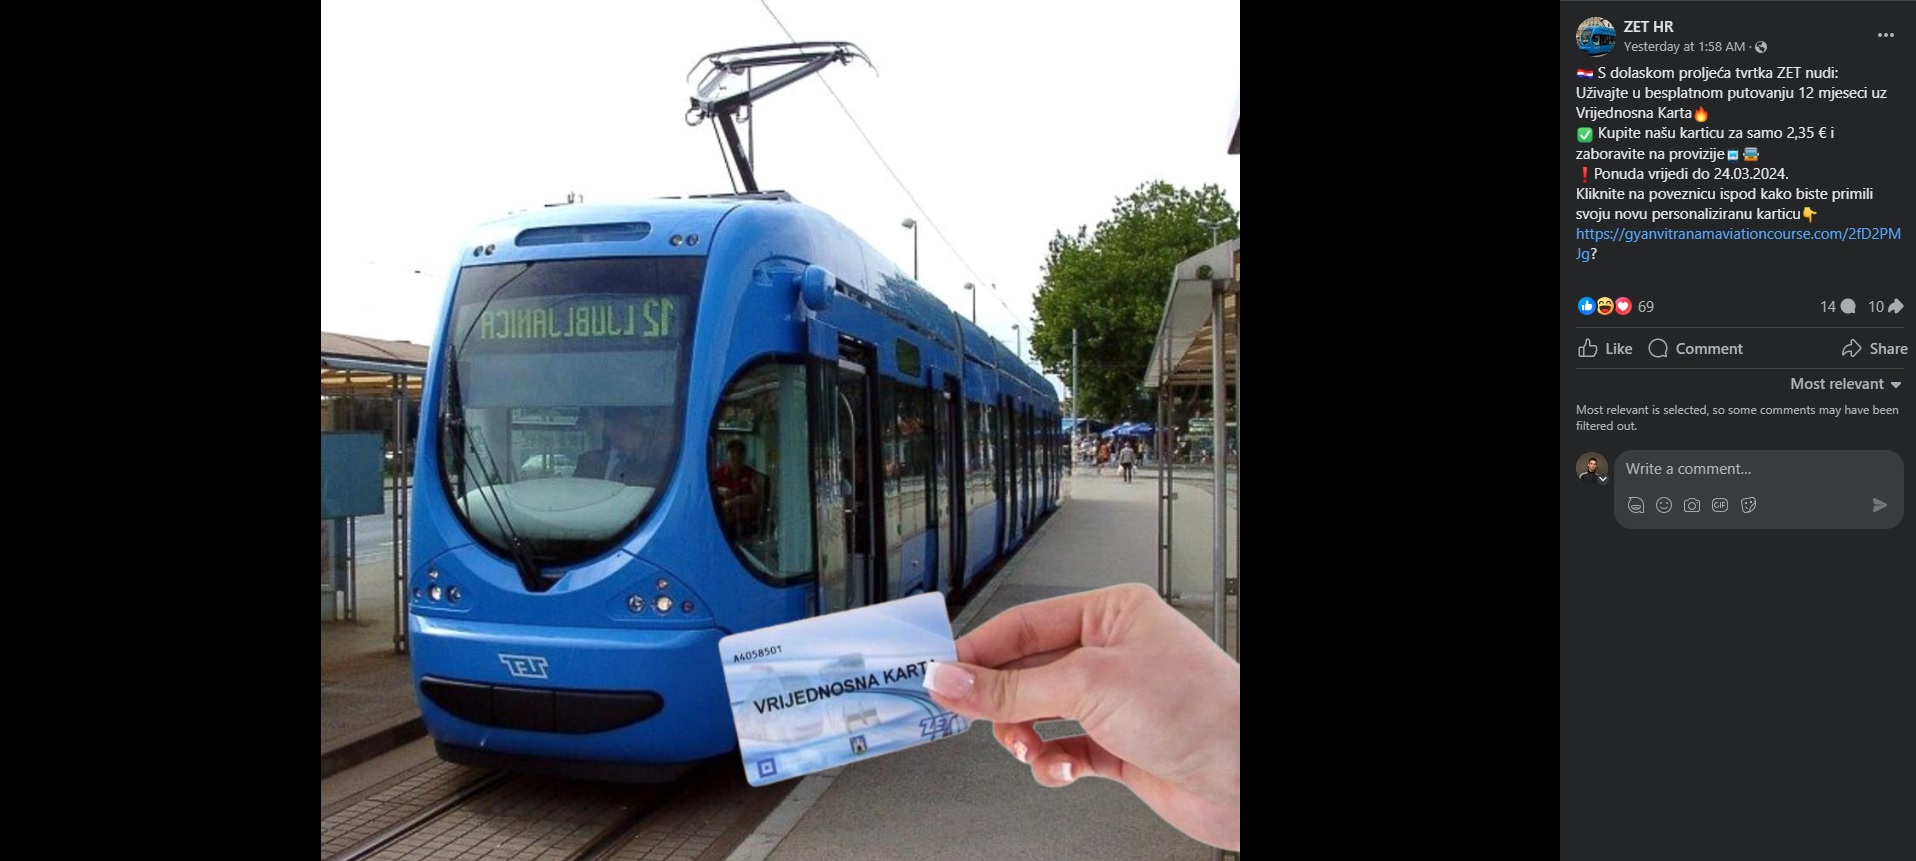 Na Facebooku je osvanula lažna stranica 'ZET HR' koja se koristi imenom Zagrebačkog električnog tramvaja (ZET).